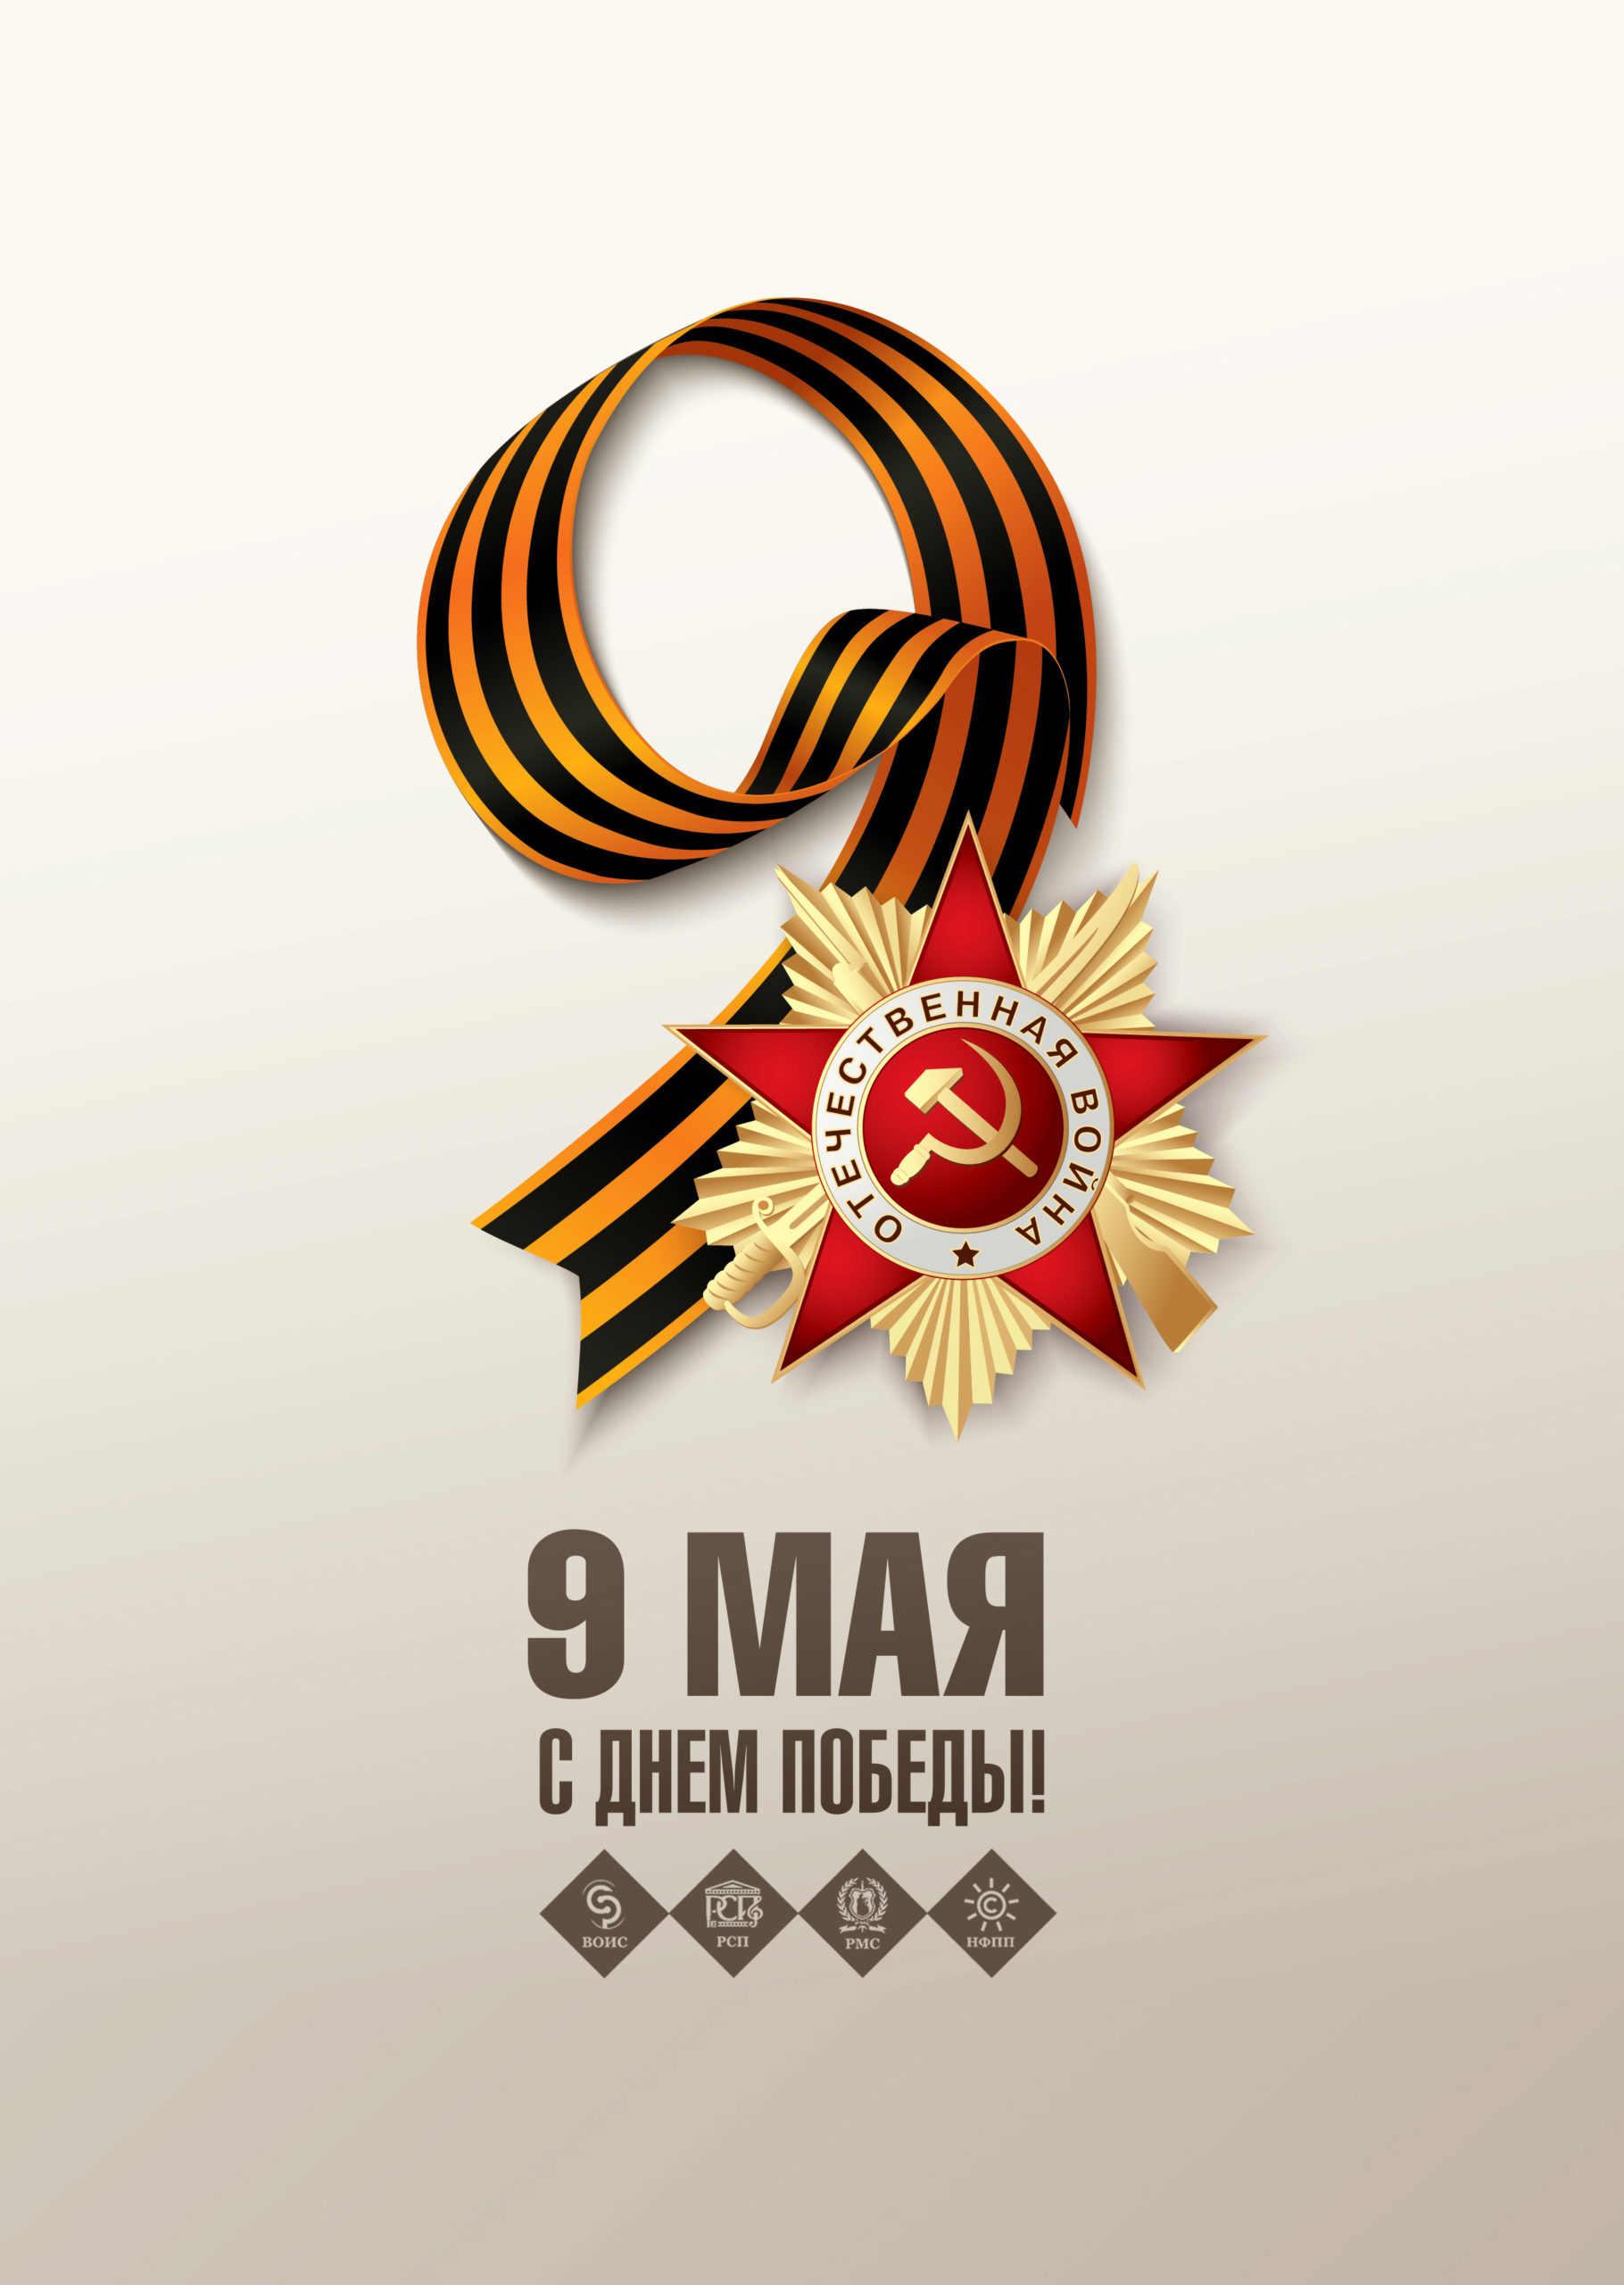 Поздравляем ветеранов Великой Отечественной войны, тружеников тыла и всех наших соотечественников с праздником Победы!